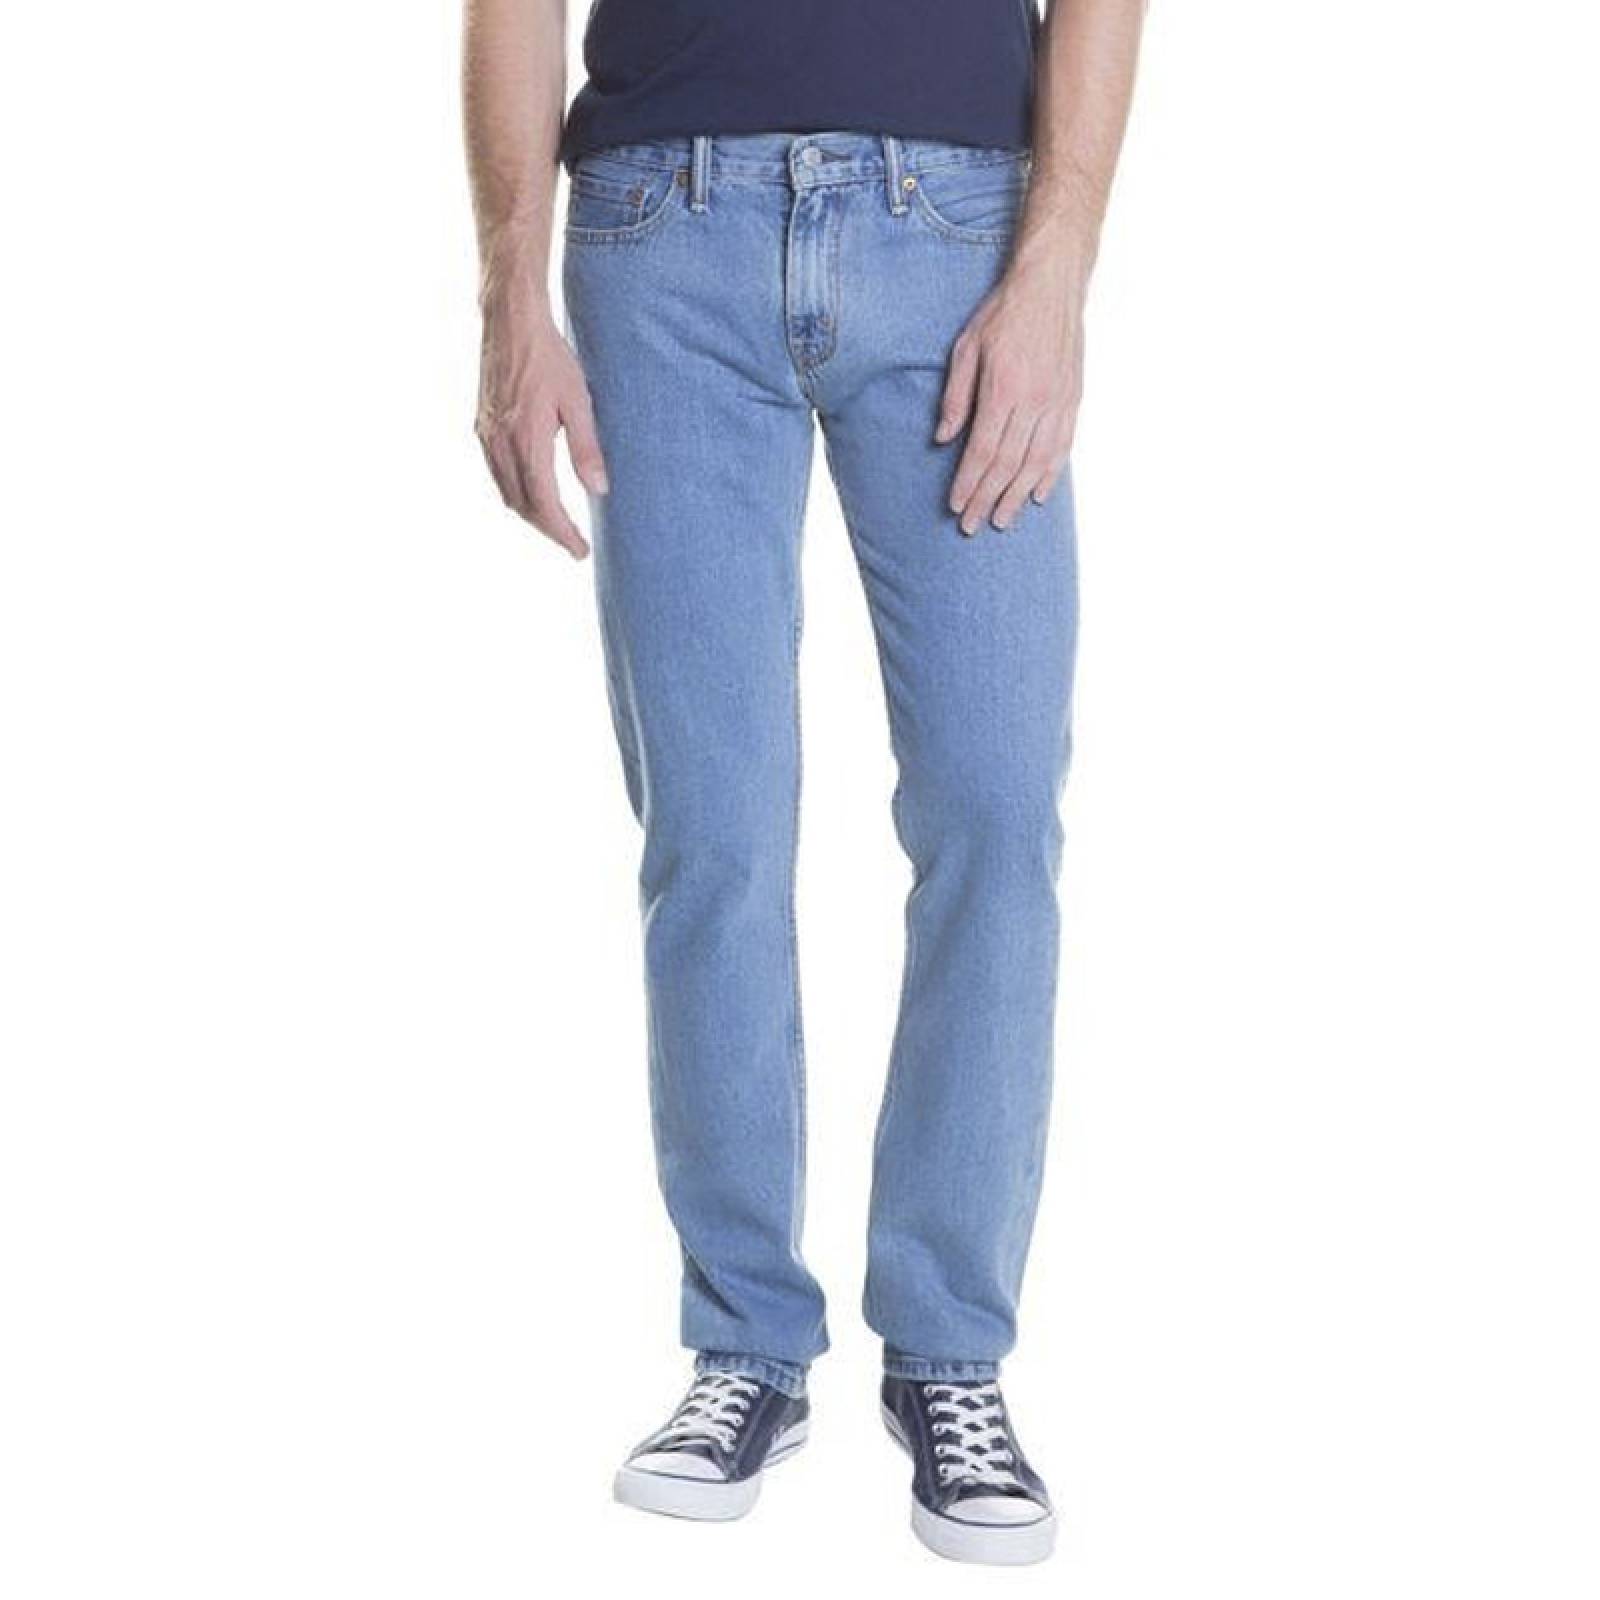 Jeans Levis 511 Slim Fit 045111289